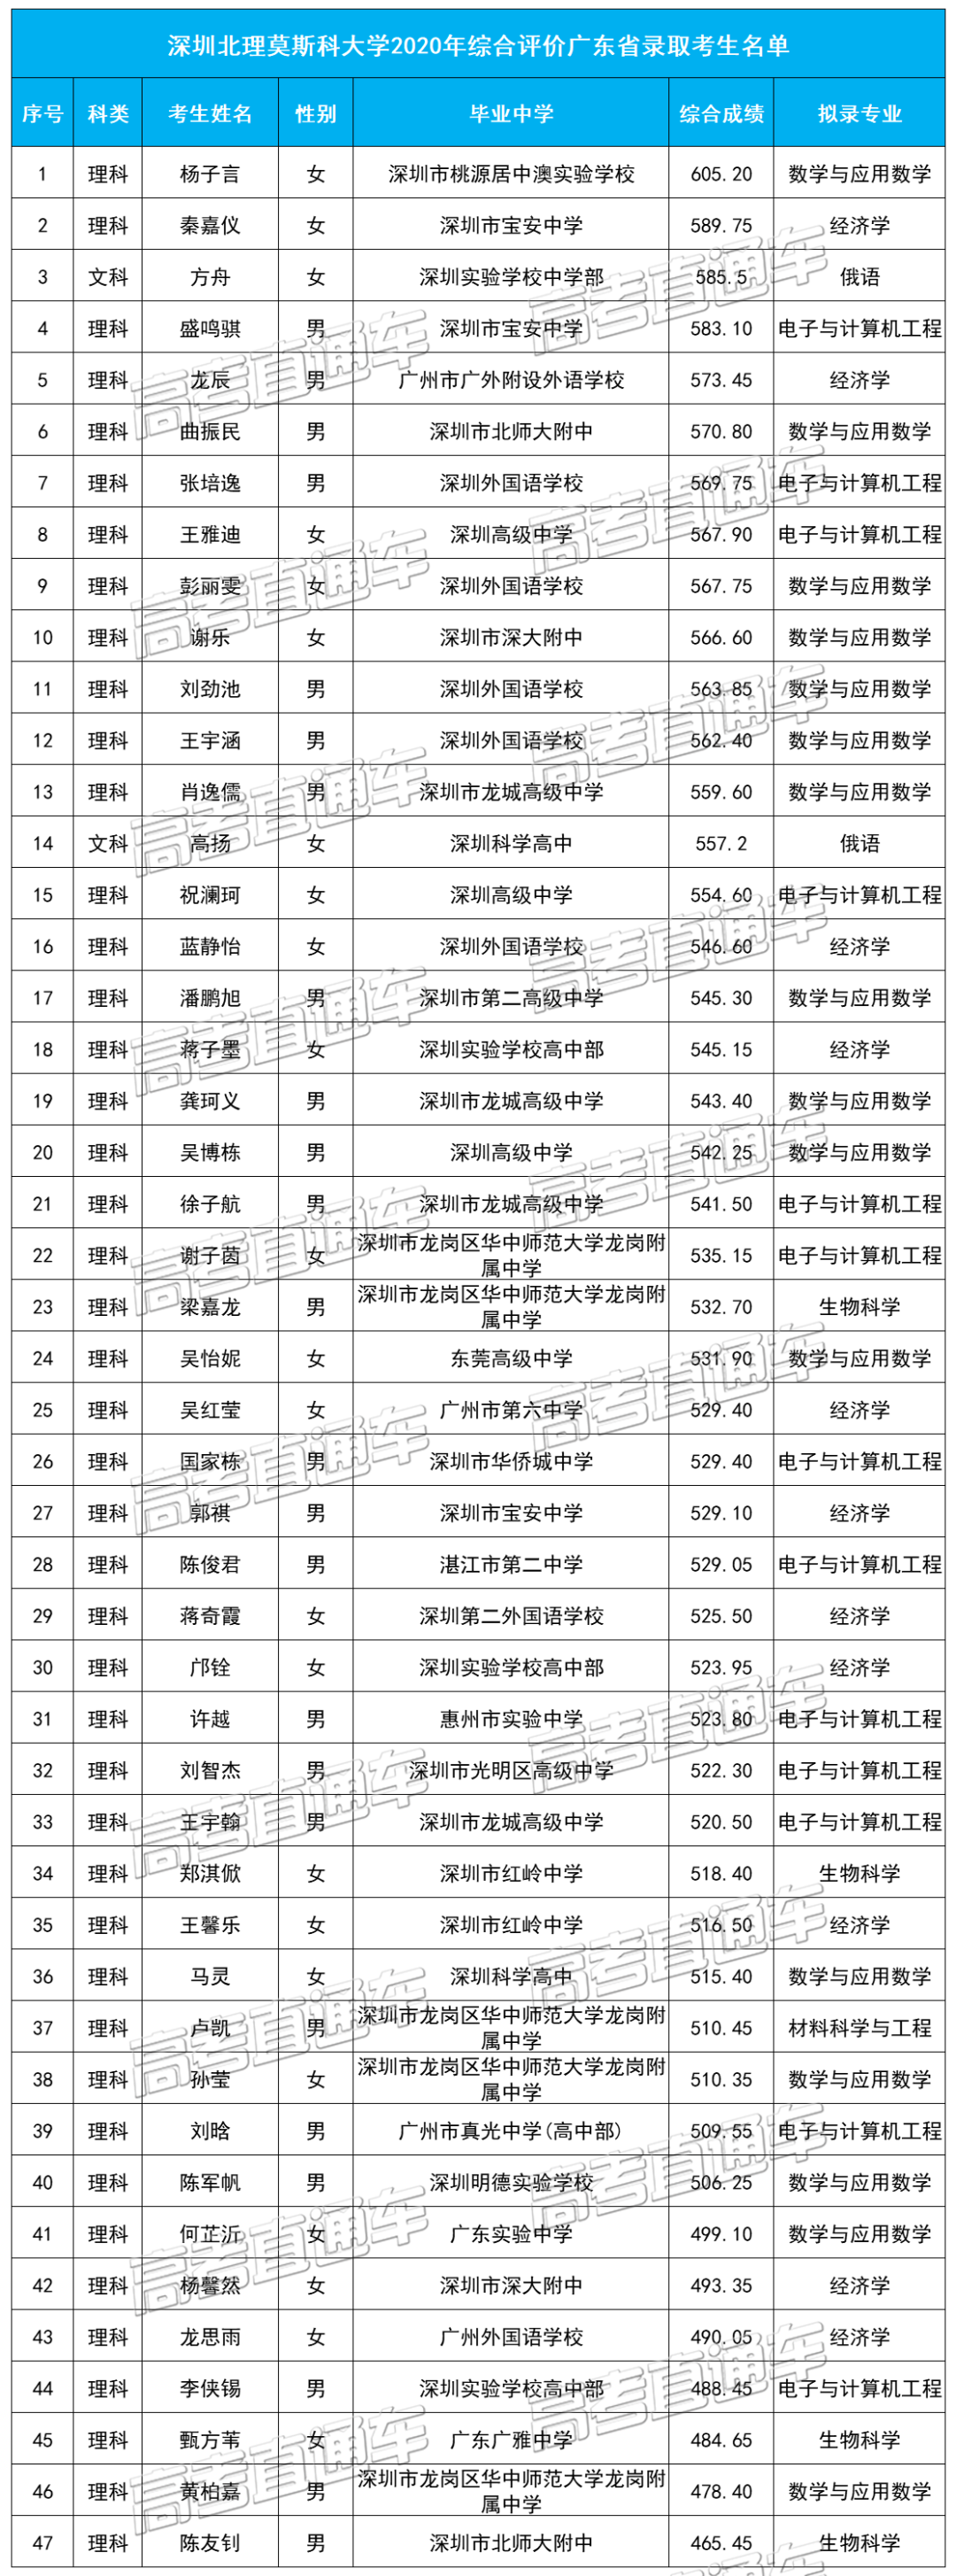 深圳北理莫斯科大学2020年综合评价广东省录取考生名单